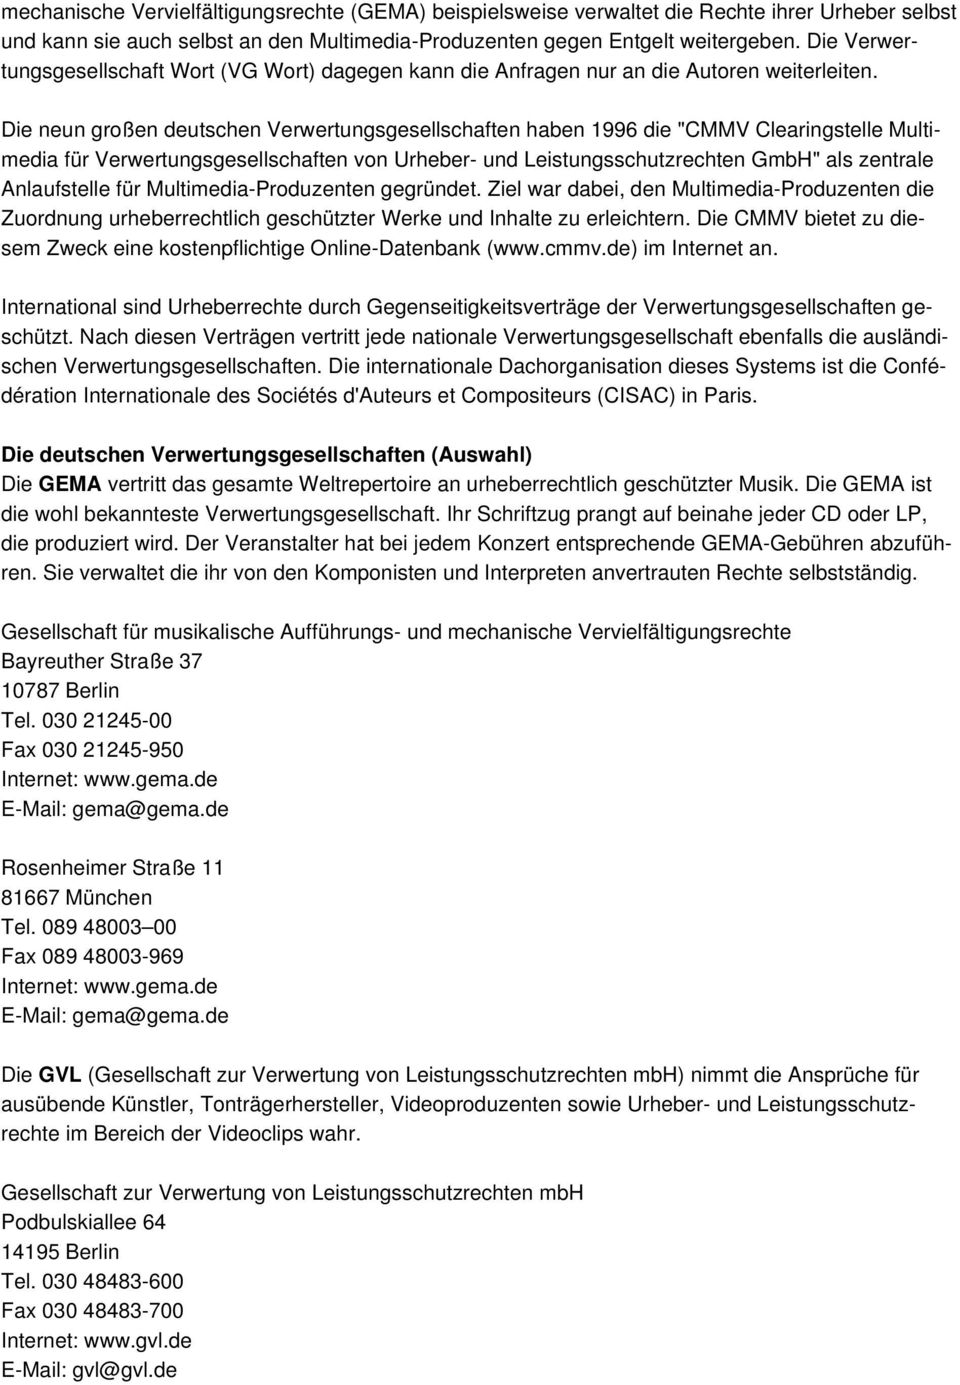 Die neun großen deutschen Verwertungsgesellschaften haben 1996 die "CMMV Clearingstelle Multimedia für Verwertungsgesellschaften von Urheber- und Leistungsschutzrechten GmbH" als zentrale